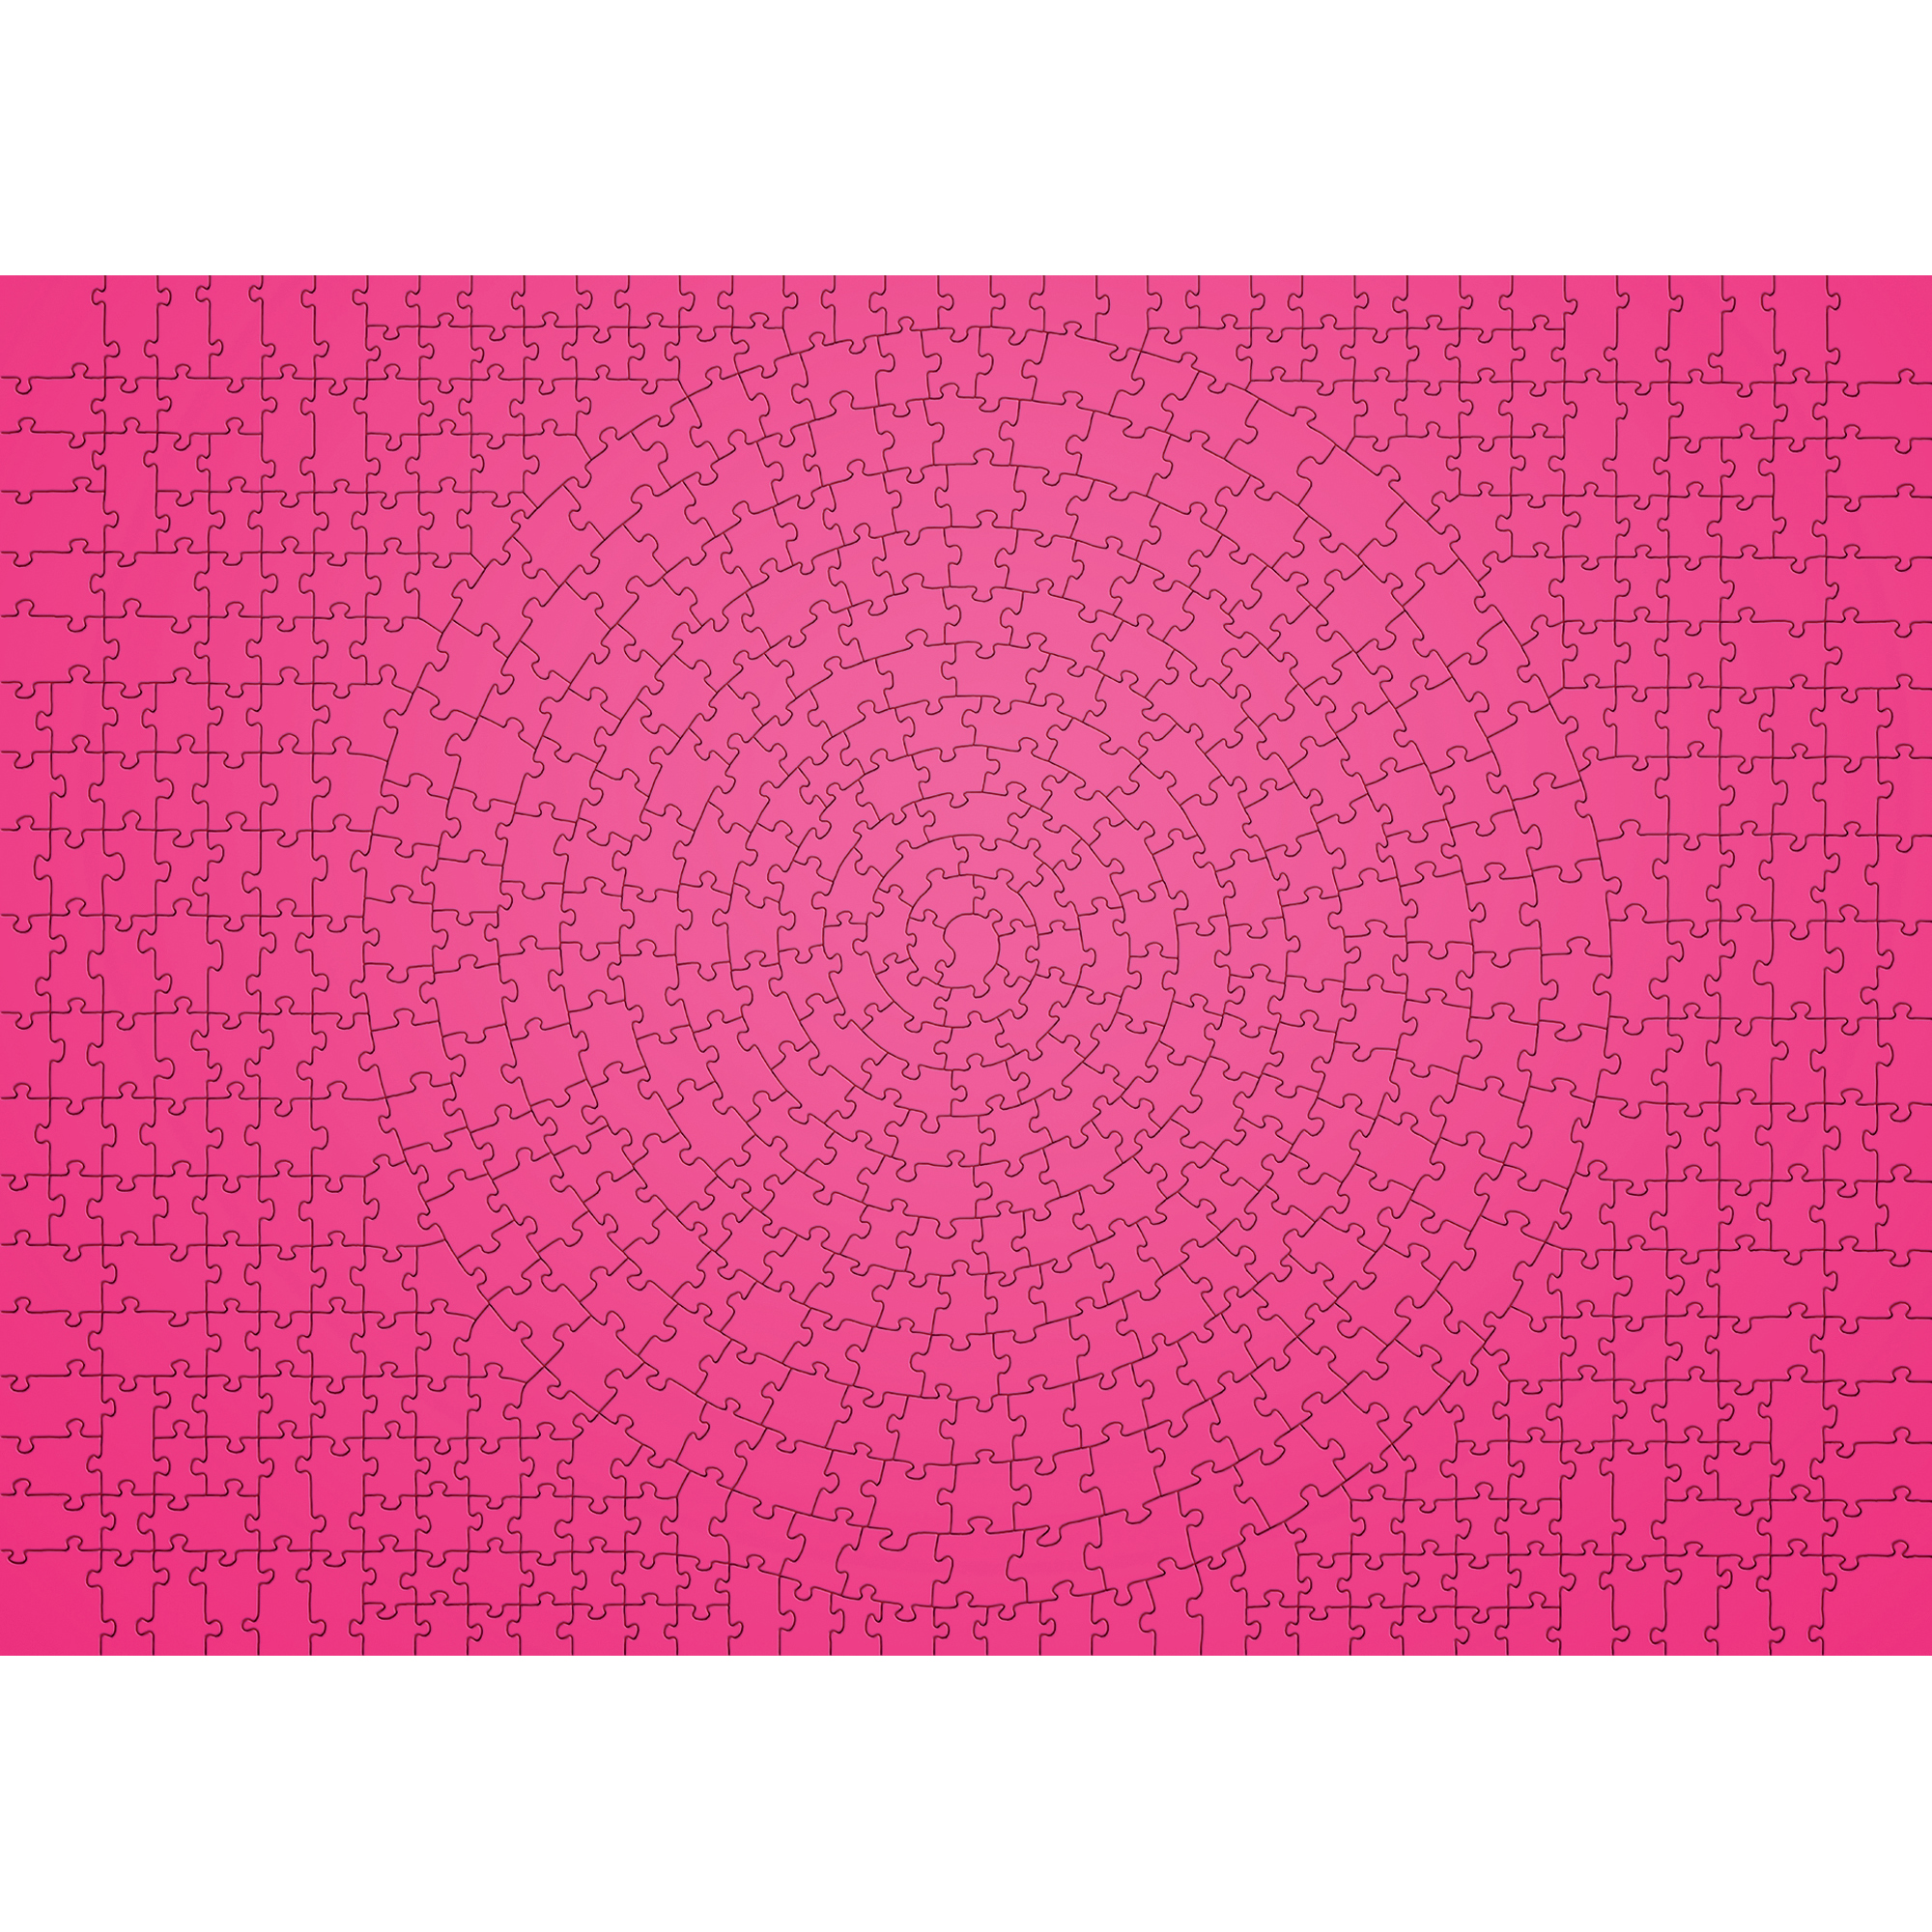 Ravensburger krypt puzzle pink, 654 pezzi - Ravensburger